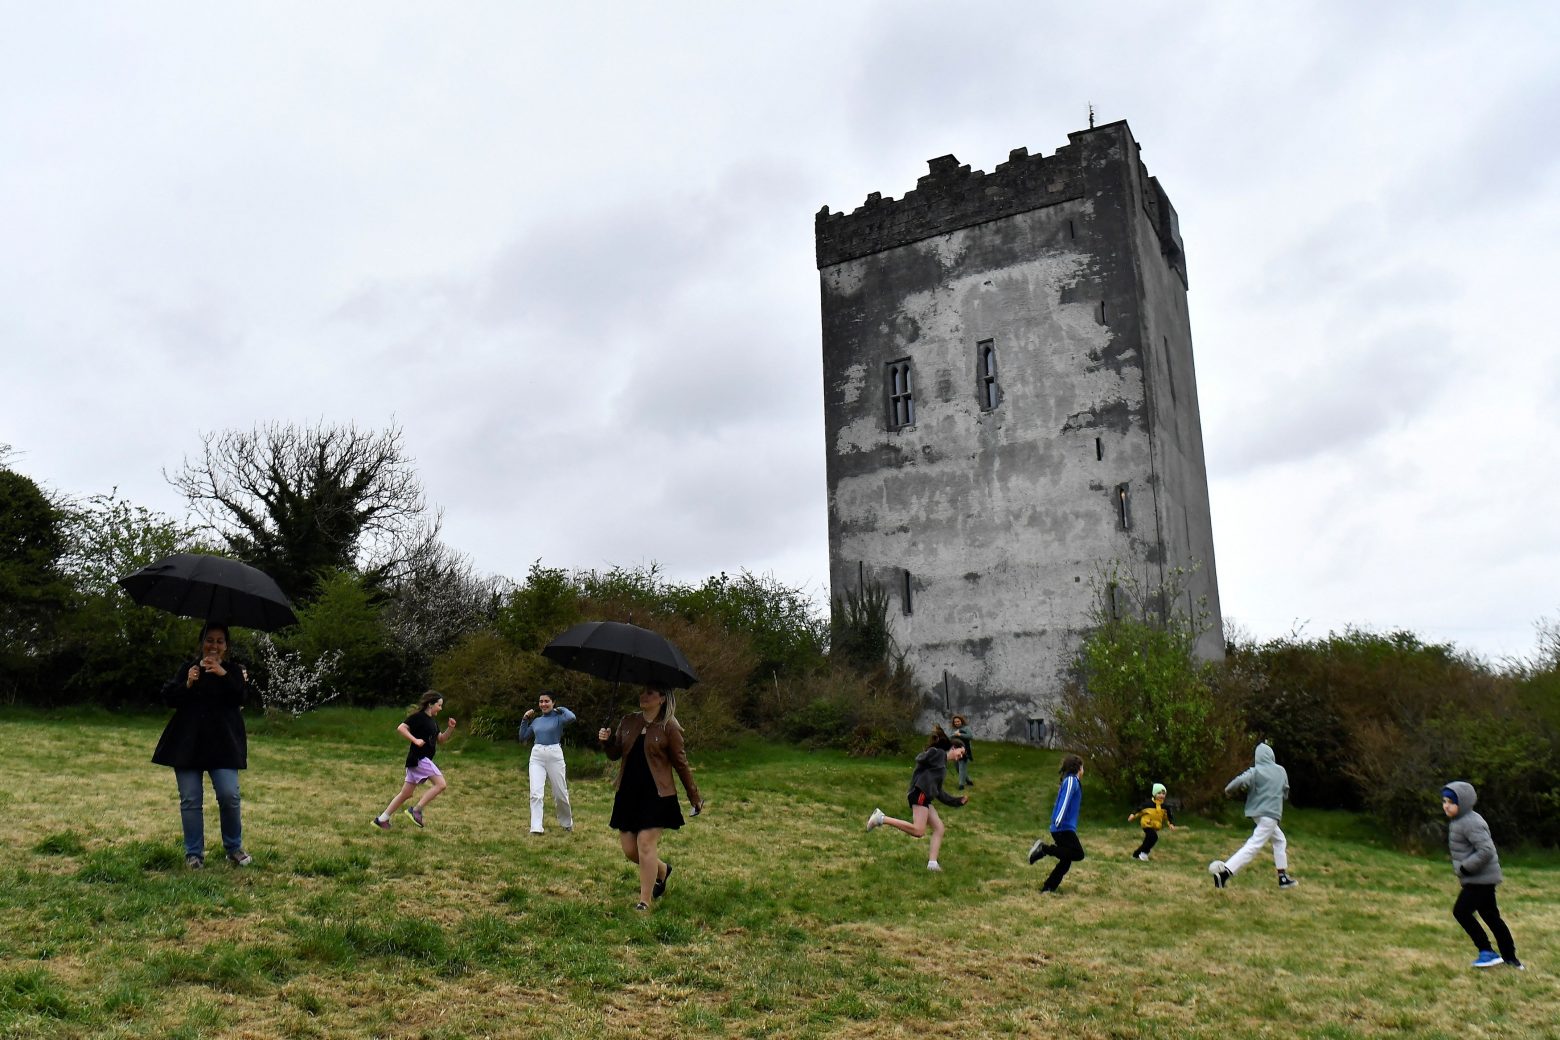 Ιρλανδία: Ουκρανοί πρόσφυγες φιλοξενούνται σε μεσαιωνικό πύργο - Ποιος τον παραχώρησε